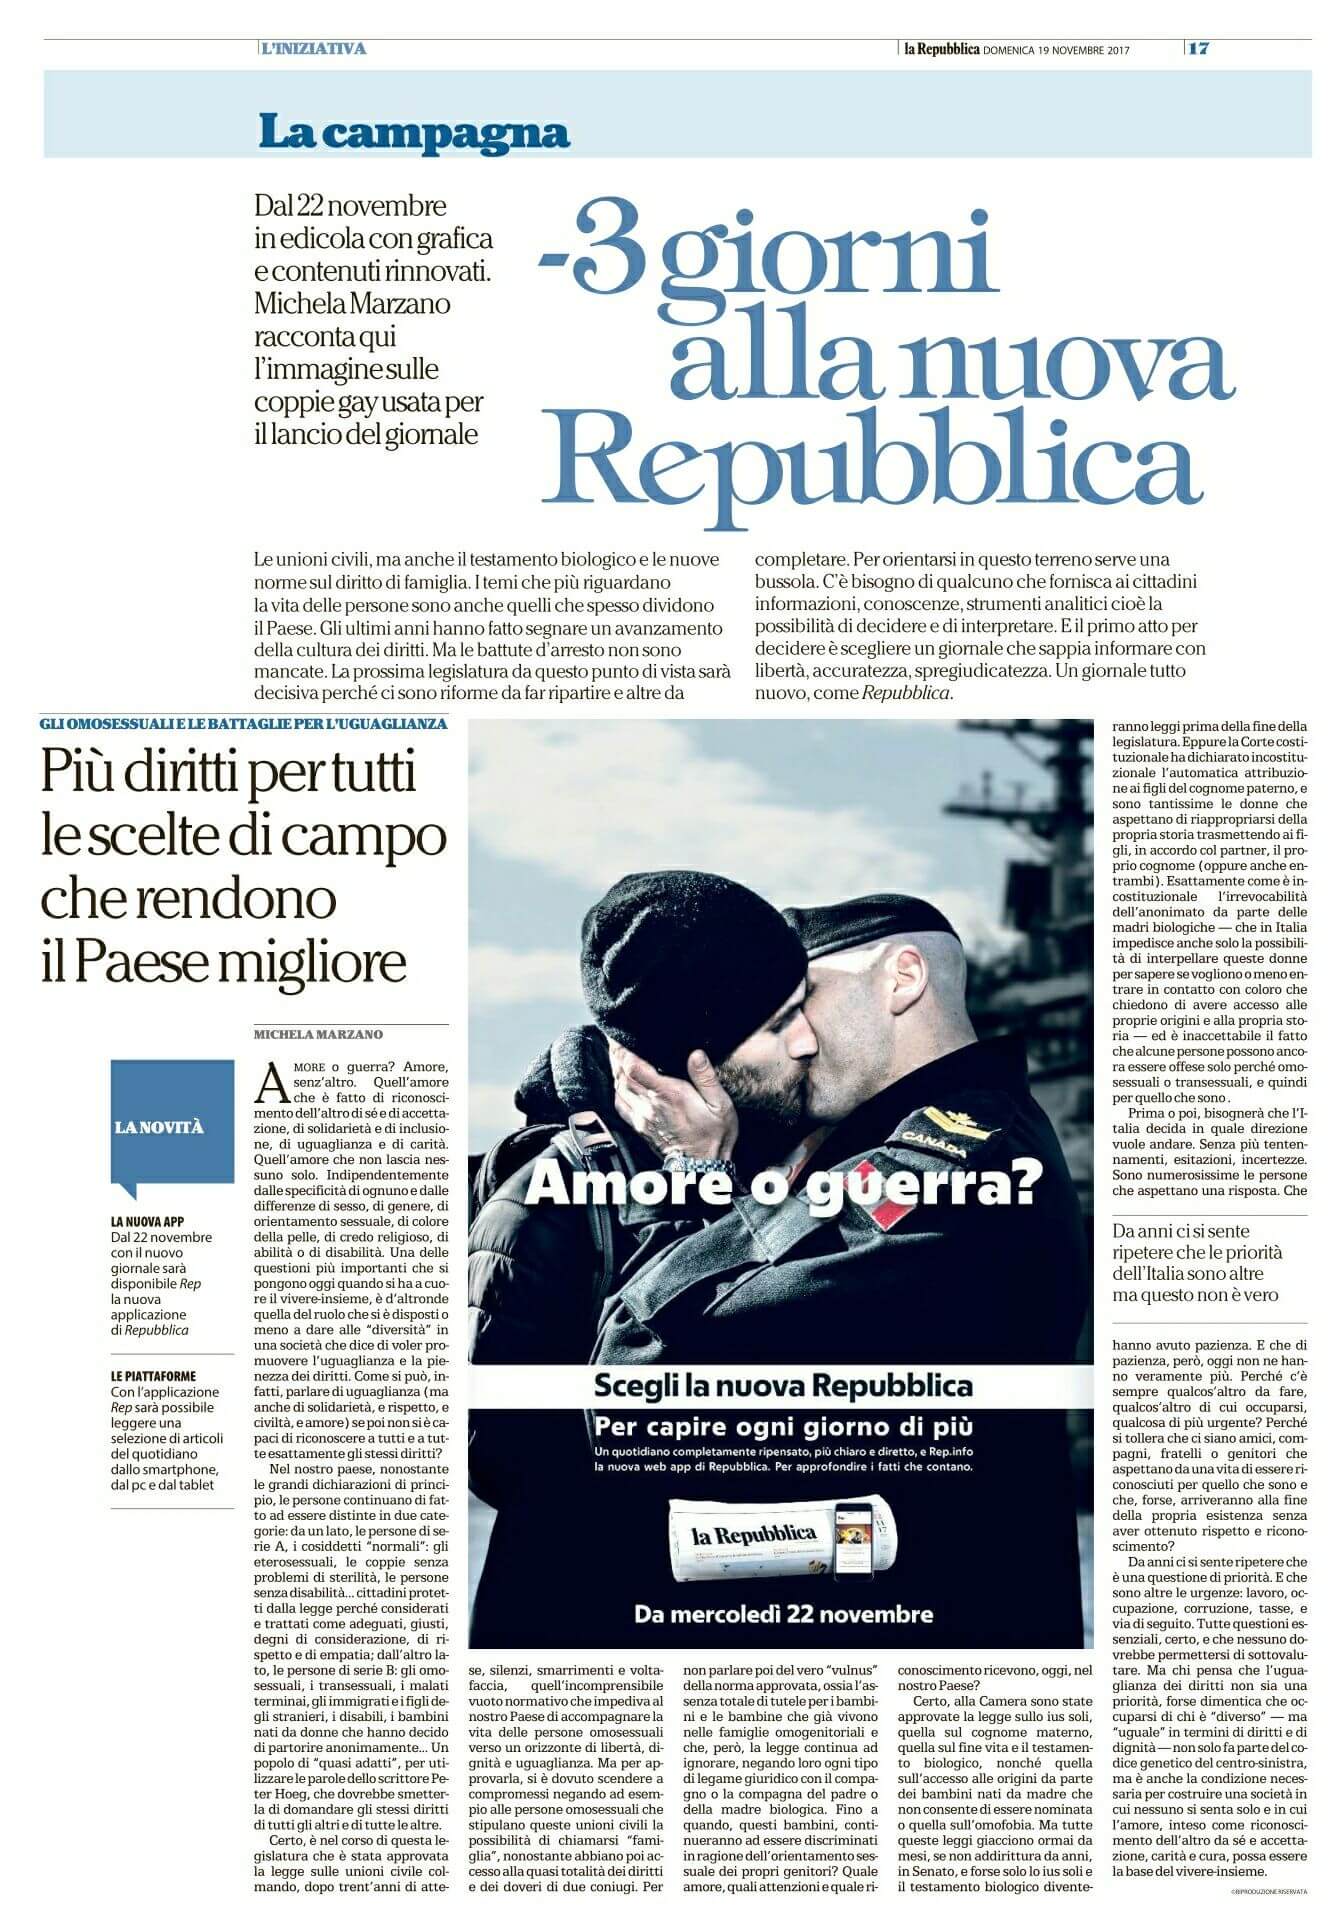 'Amore o Guerra?', un bacio gay per la campagna promozionale della nuova Repubblica - Amore o Guerra un bacio gay Repubblica - Gay.it